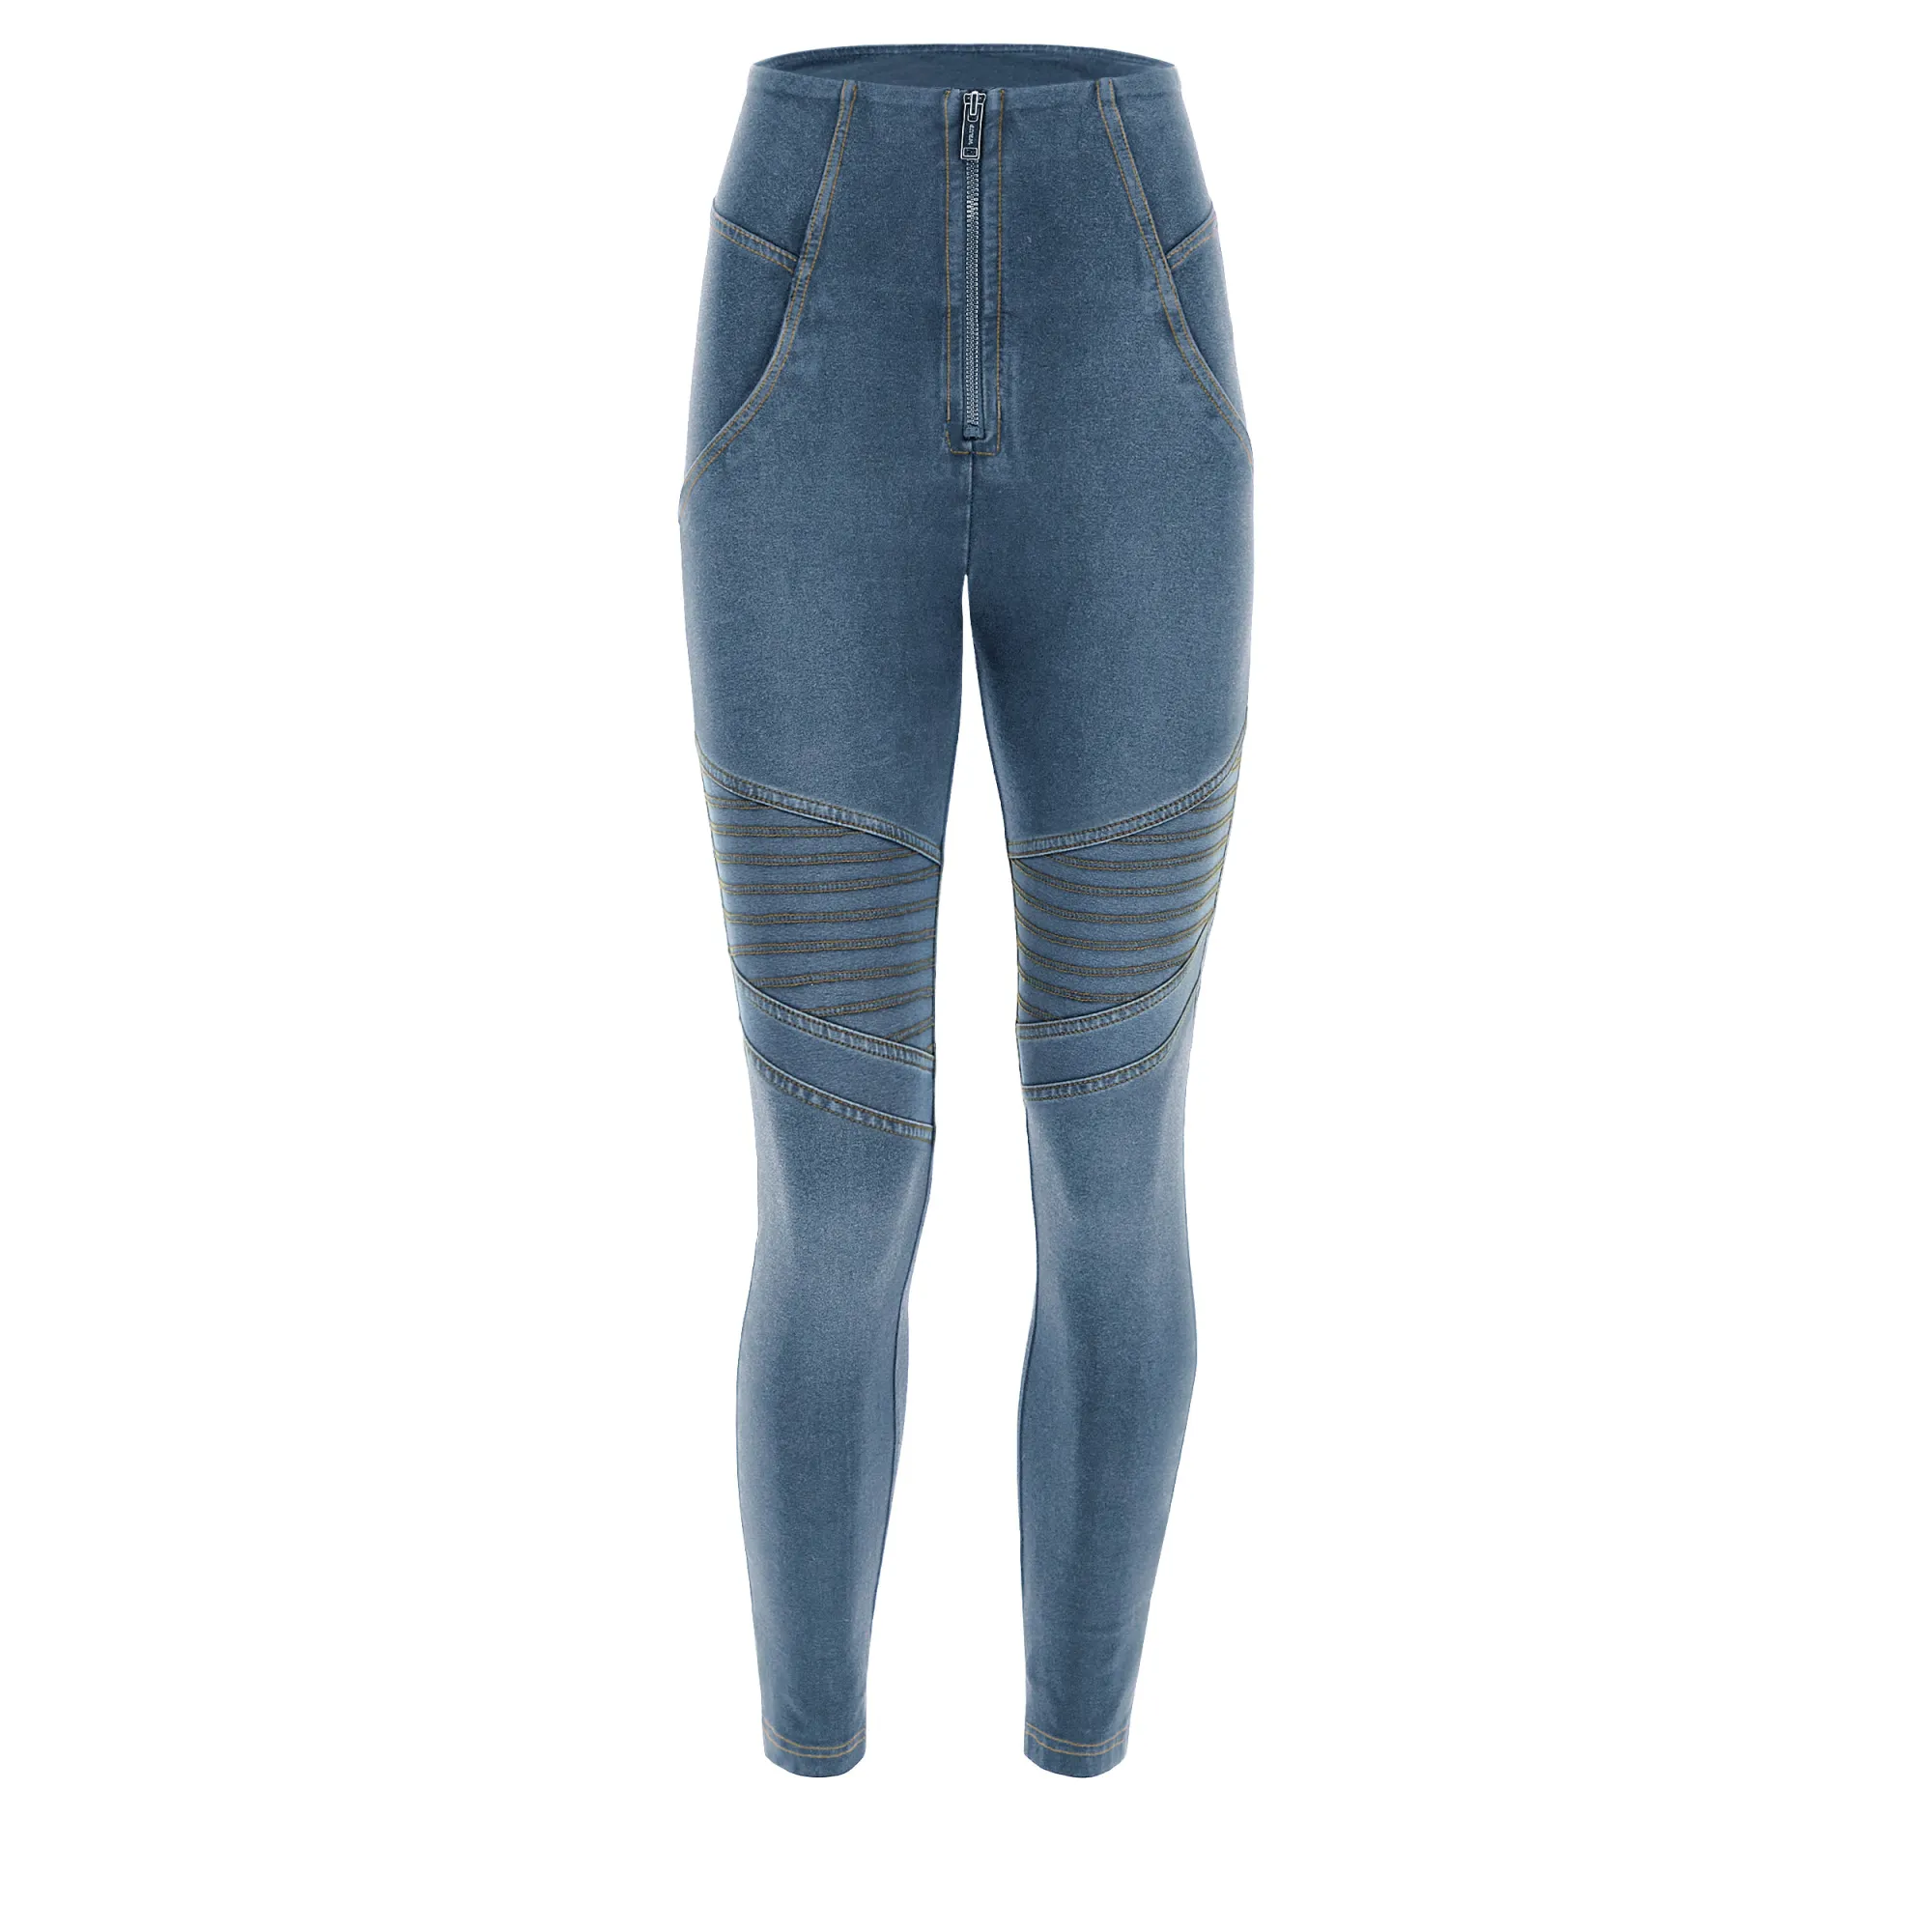 Freddy WR.UP® Damen Push-Up Jeans - 7/8 Super High Waist Super Skinny - Biker-Style - Used Look - Hellblau - Gelbe Nähte - J4Y